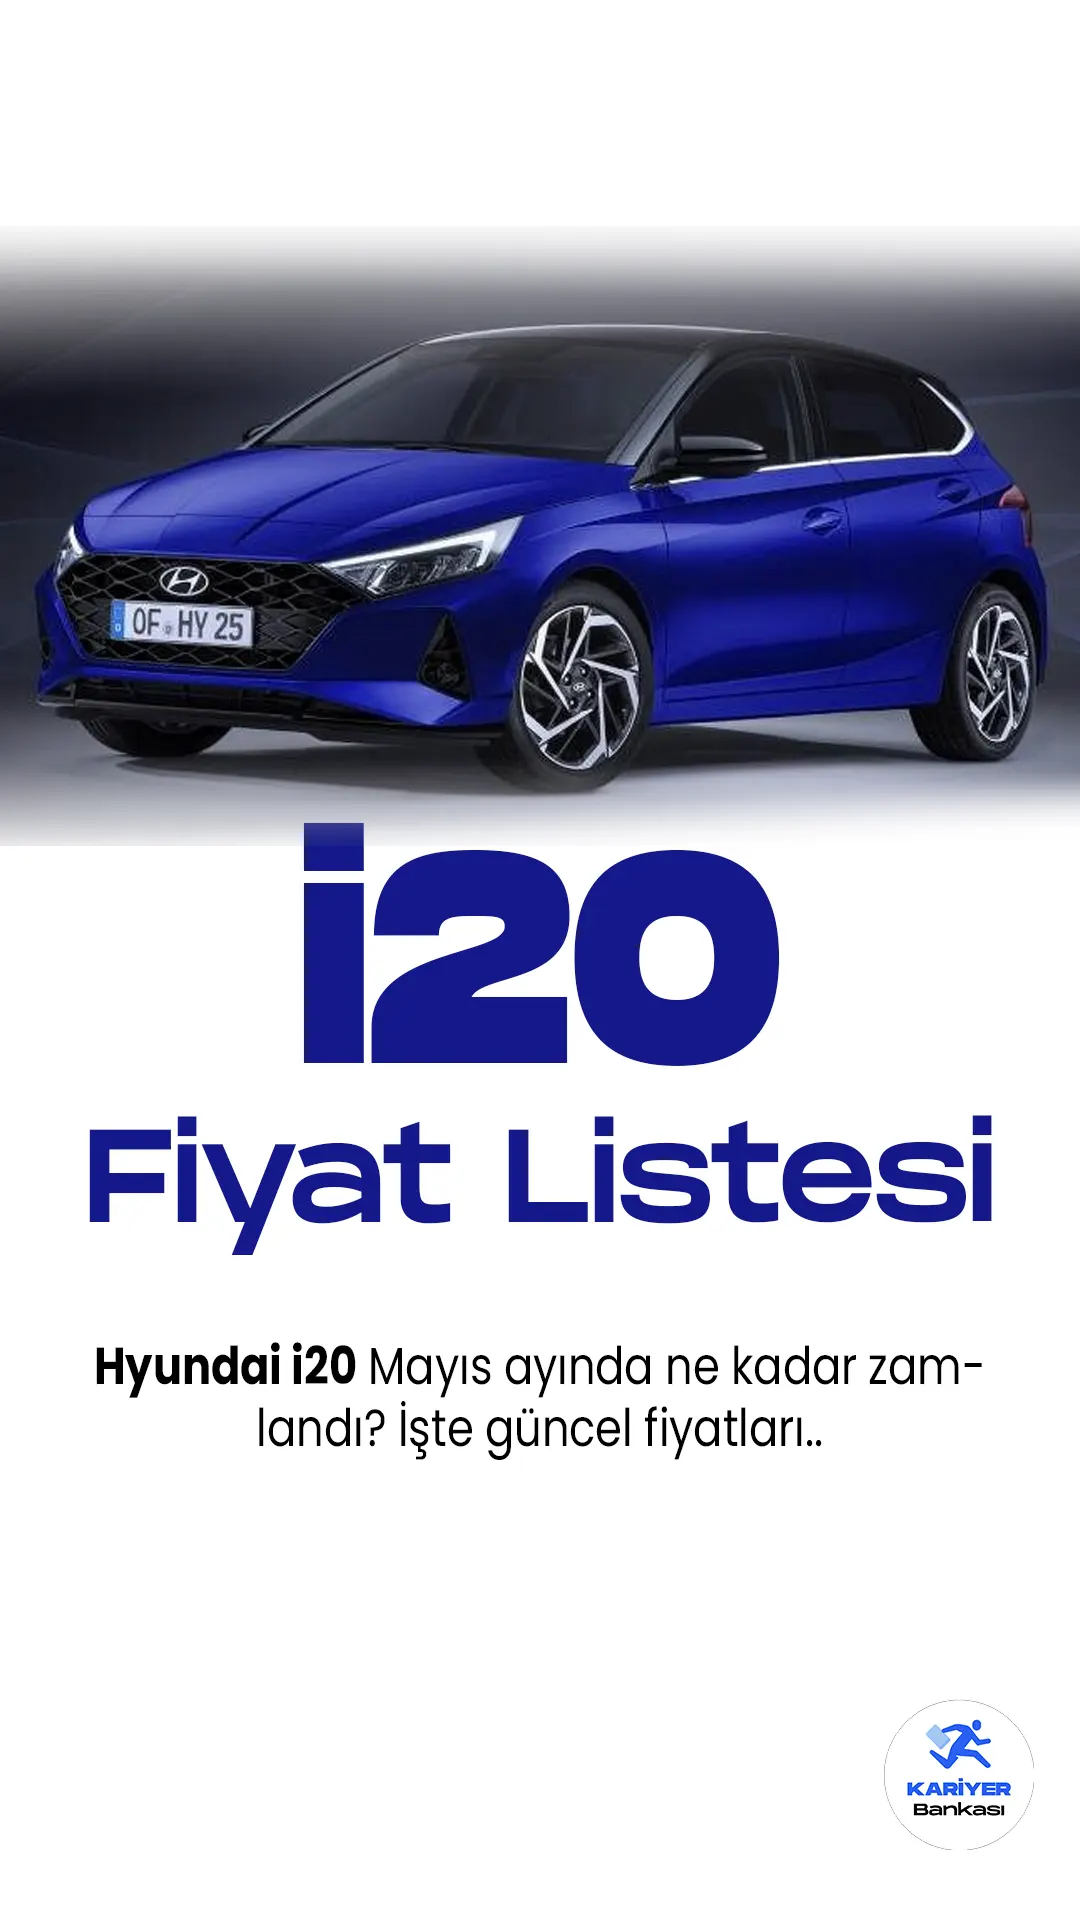 Hyundai i20 Mayıs 2023 Fiyat Listesi Yayımlandı.Türkiye'de popüler araç markaları arasında yer lan Hyunda, her ay fiyat listelerini güncellemeye devam ediyor. Hyundai i20, Güney Koreli otomobil üreticisi Hyundai'nin kompakt sınıftaki popüler bir modelidir. İkinci nesliyle karşımıza çıkan i20, dinamik tasarımı ve geniş iç mekanıyla dikkat çekiyor. Yenilenen ön ve arka tasarımıyla modern bir görünüm sunan i20, keskin hatları ve agresif ön ızgarasıyla sportif bir duruş sergiliyor.